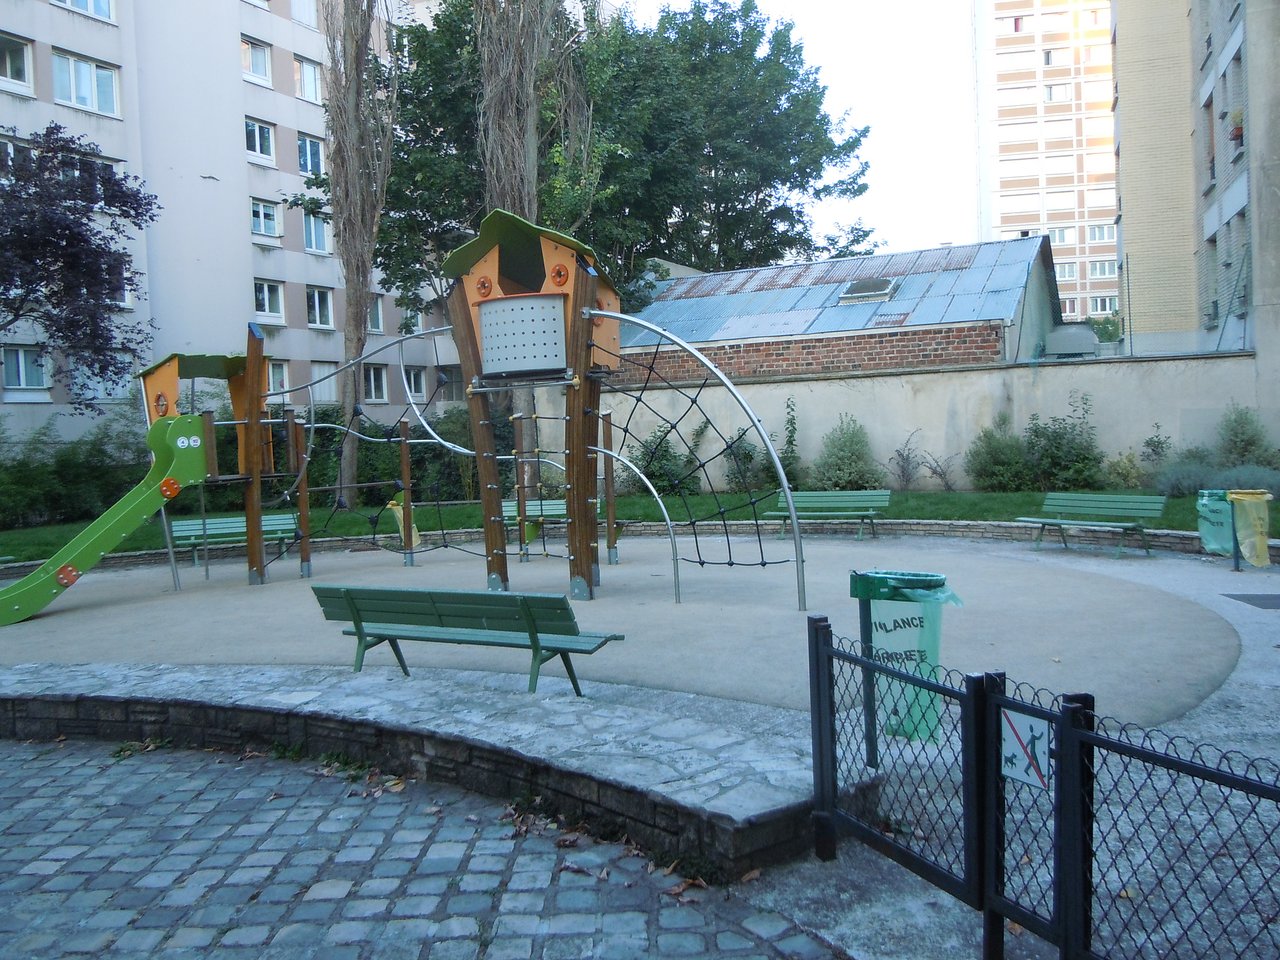 Architecte Jardin Nouveau Jardin Du Regard De La Lanterne Paris 2020 All You Need